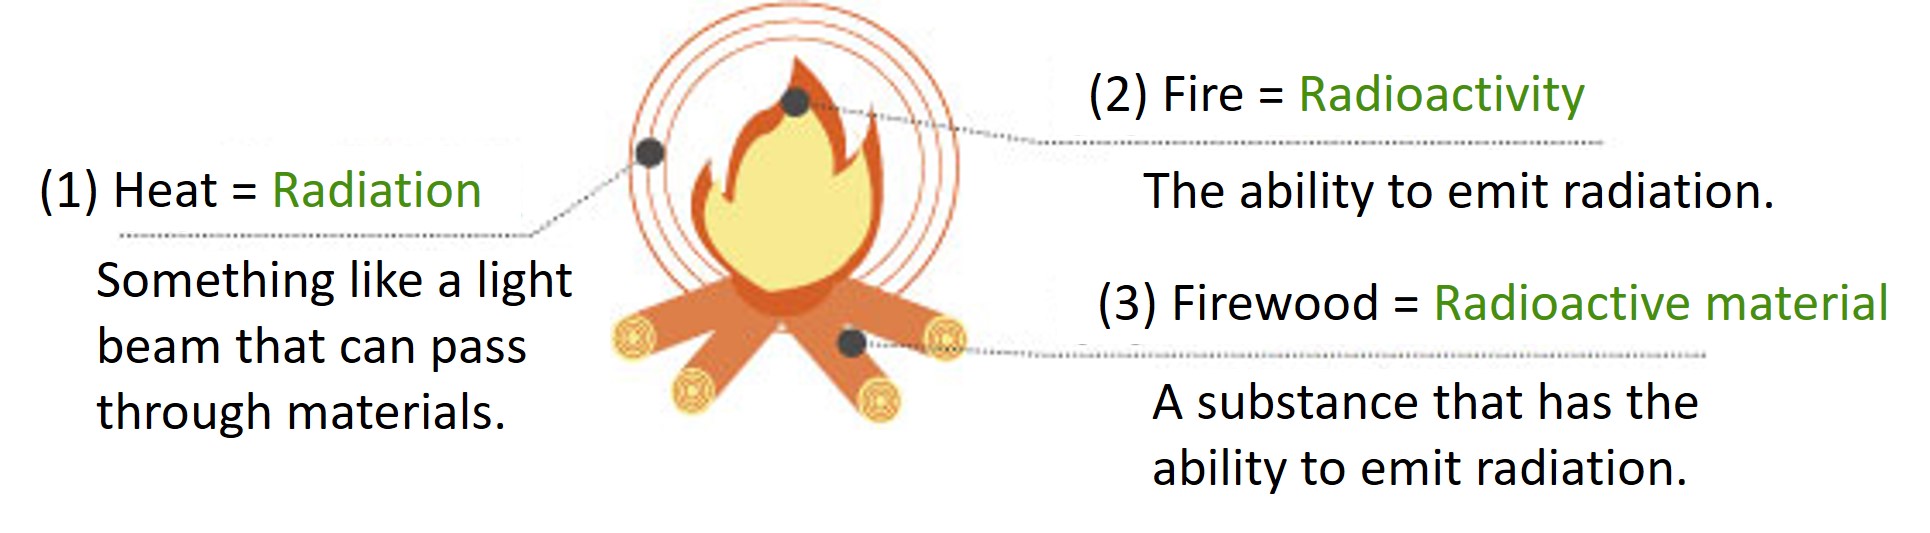 bonfire analogy